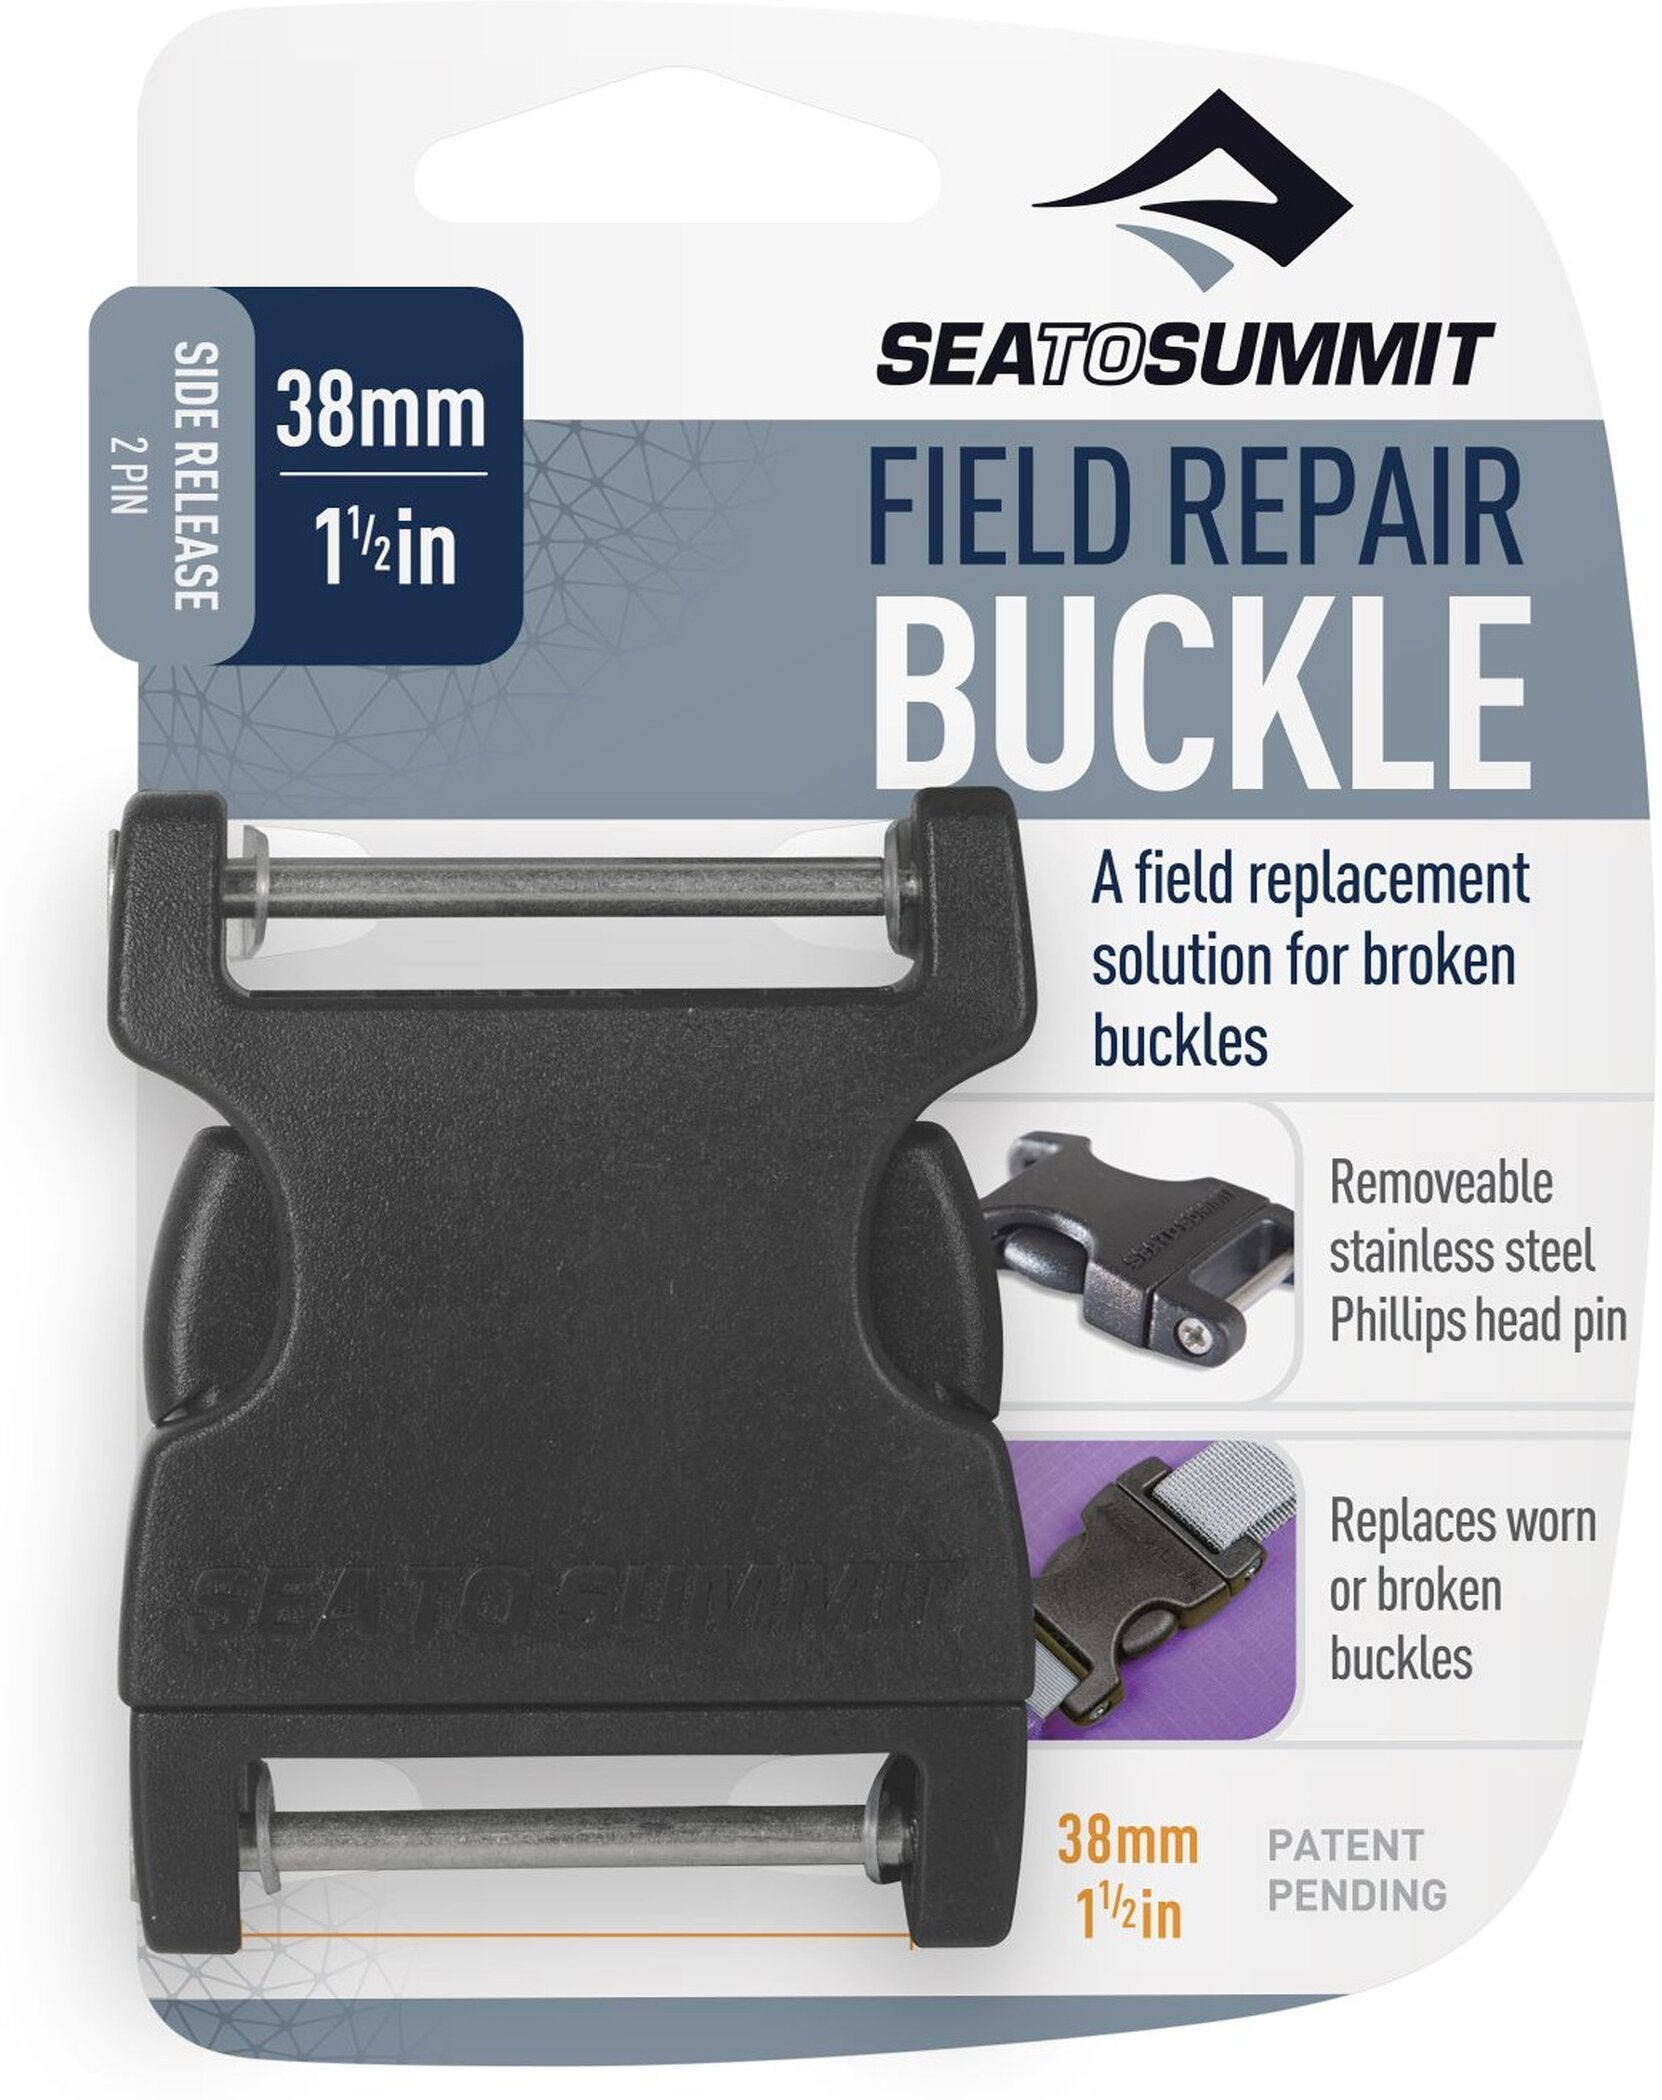 Rucksack Field Repair Buckle - 38mm Side Release 2 pin